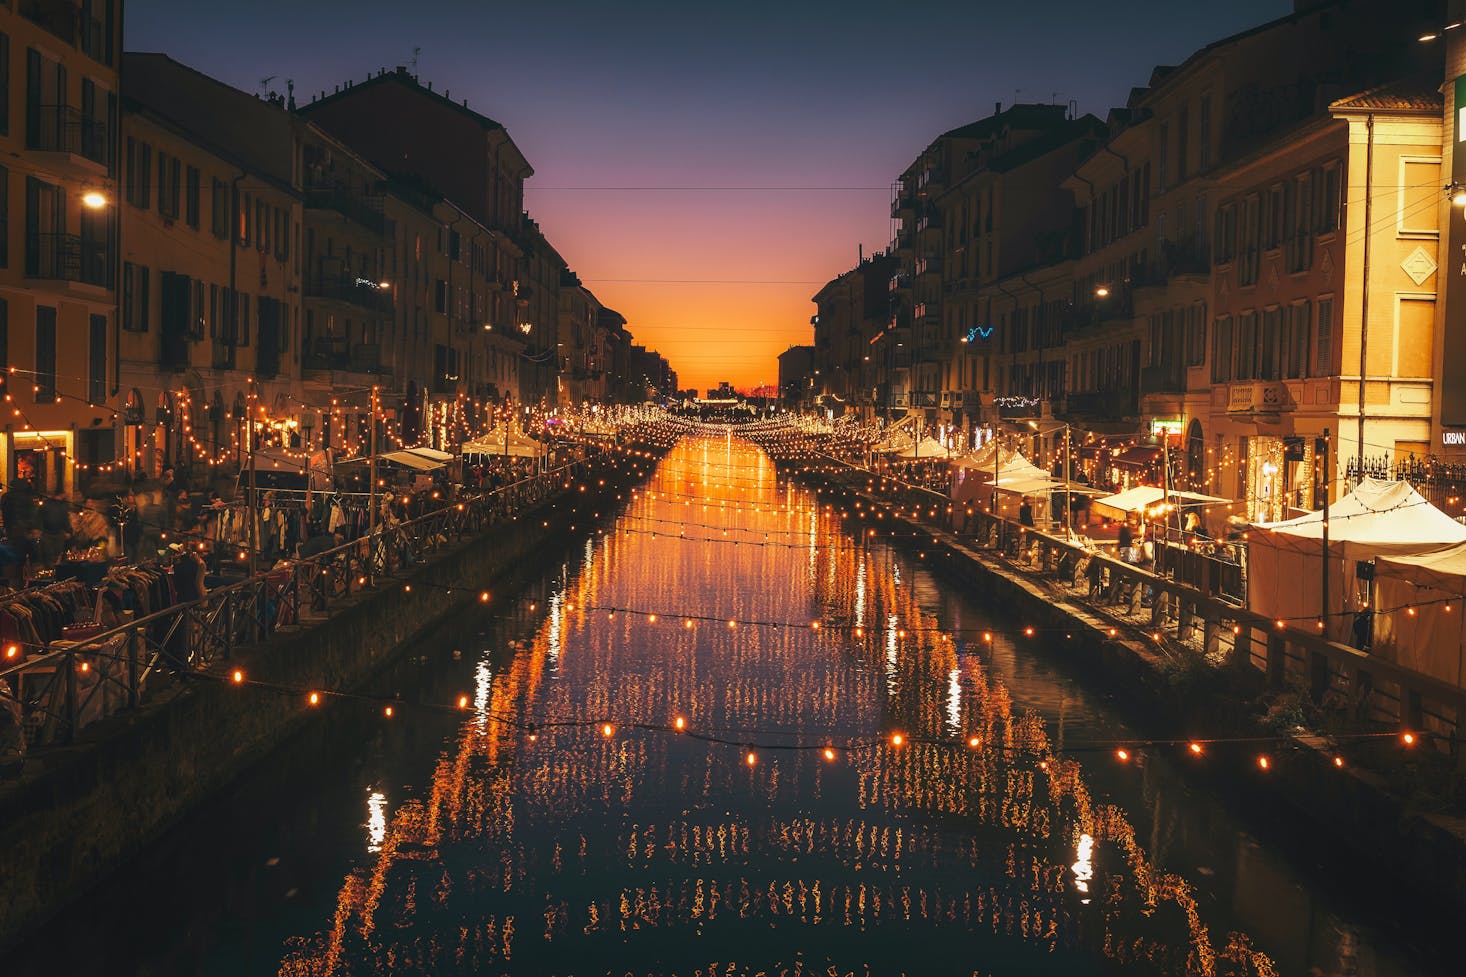 Milan canal at night